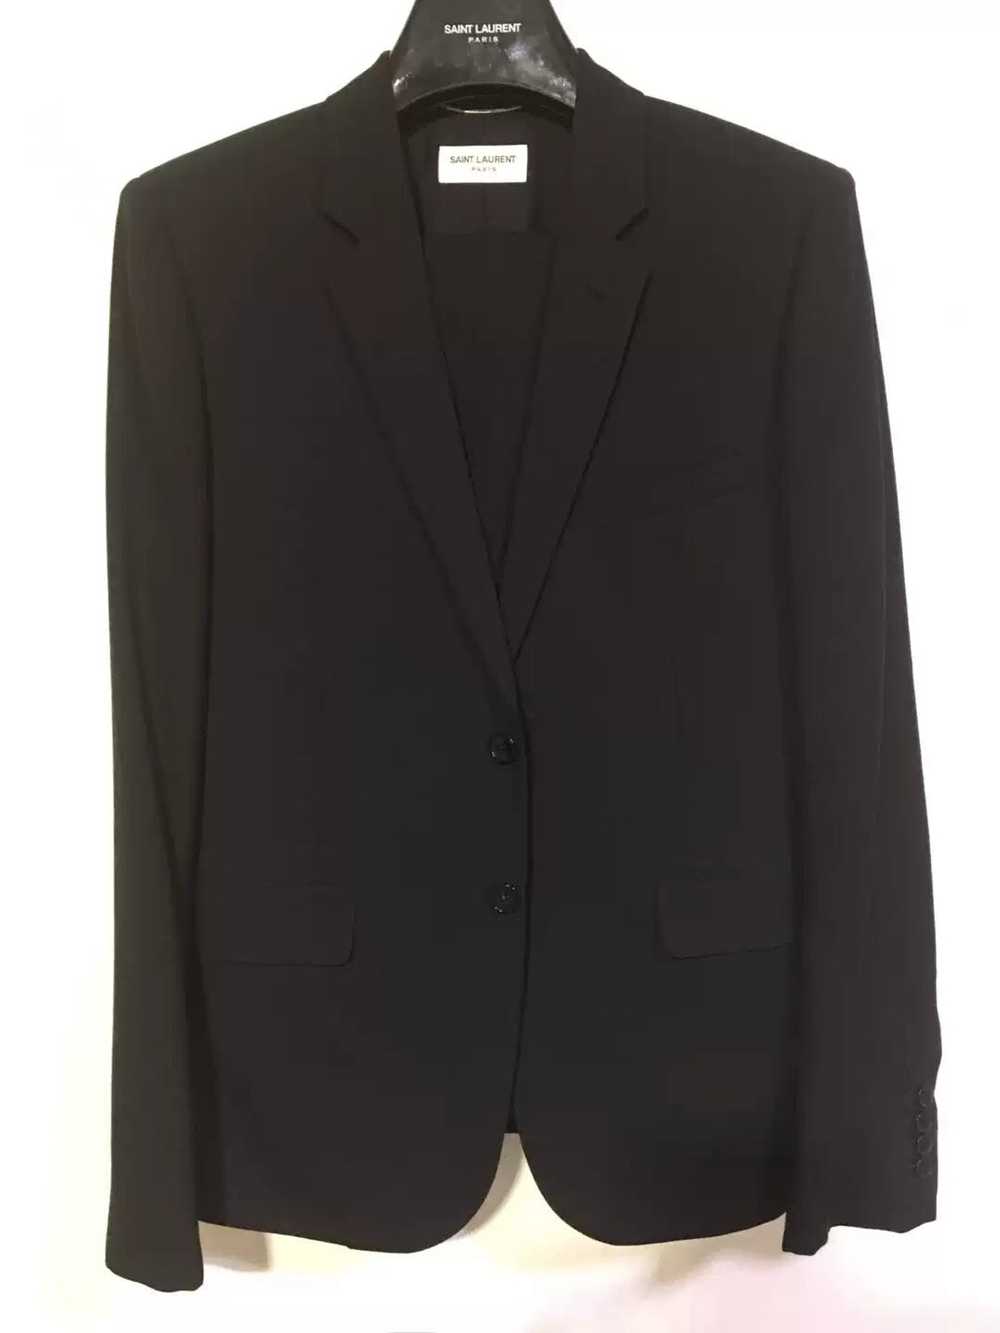 Yves Saint Laurent Black formal suit - image 1